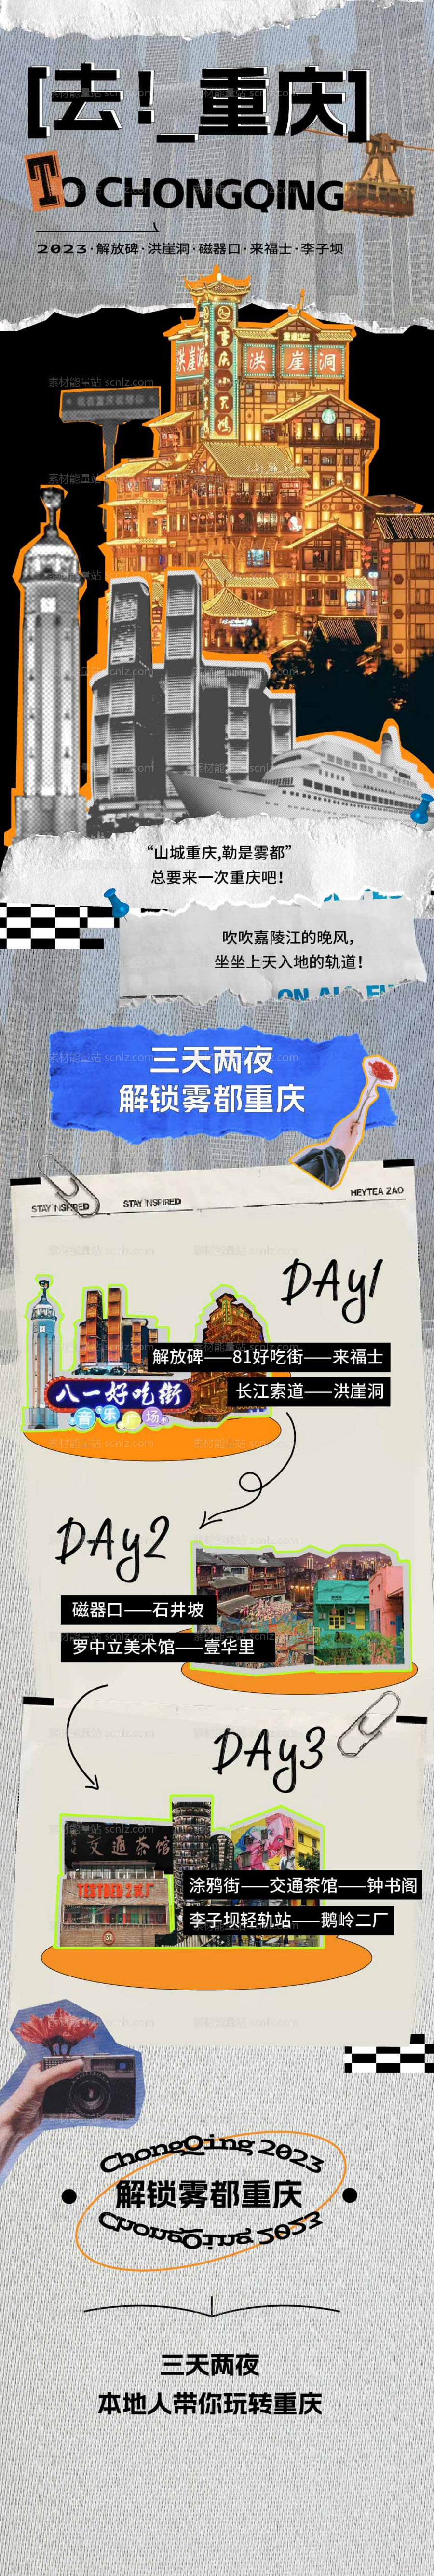 素材能量站-重庆洪崖洞长图旅游攻略复古拼贴海报